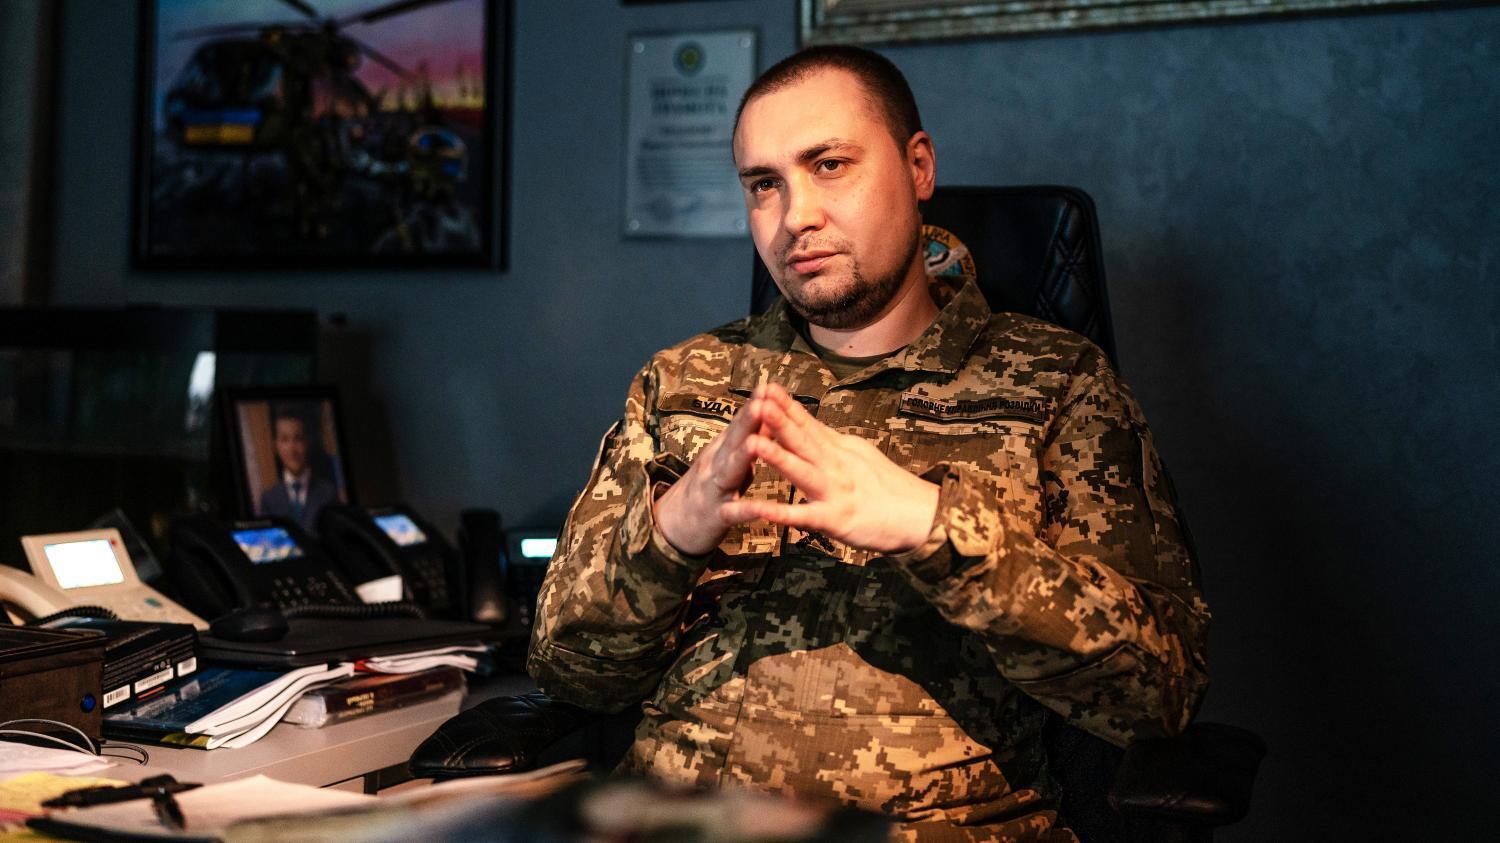 Буданов заявив, що загроза теракту на Запорізькій АЕС потроху спадає